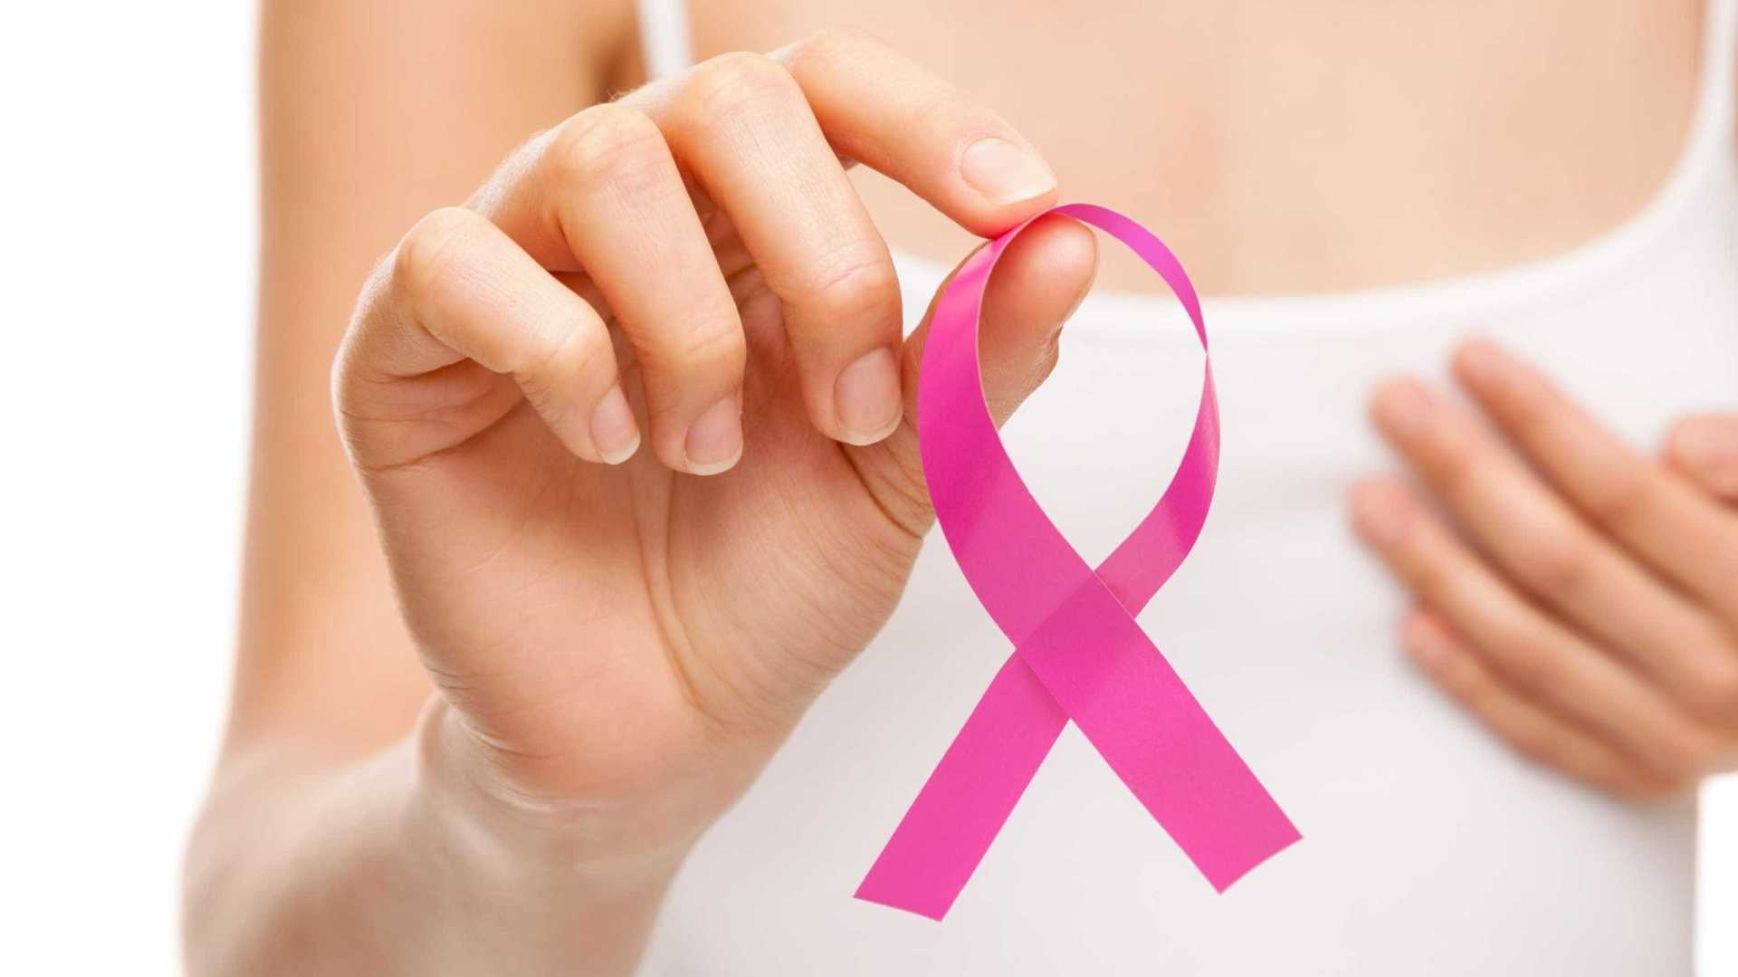 Quatro em cada dez pessoas com cancro da mama sentiram impacto elevado da doença a nível físico, sexual e imagem corporal